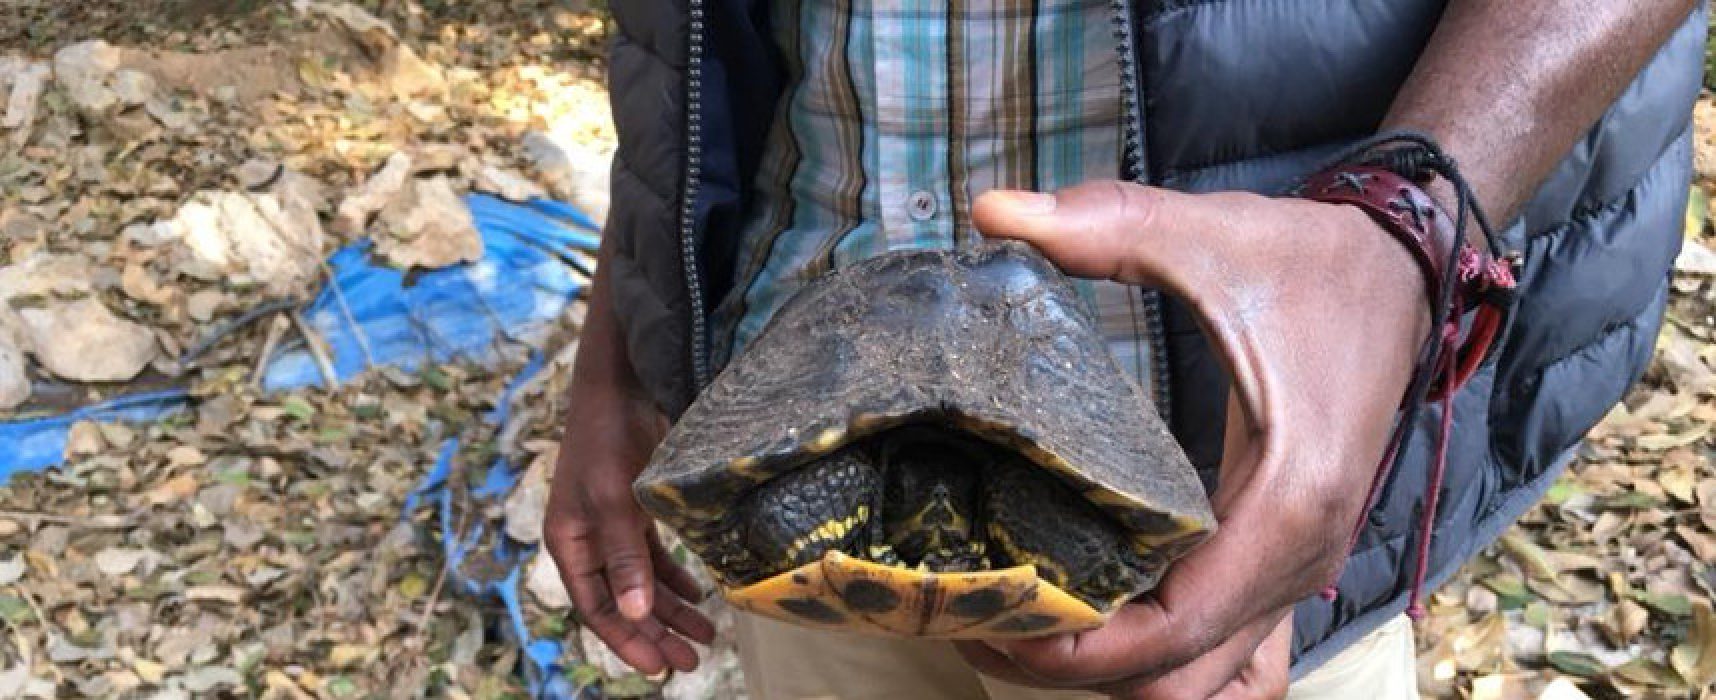 Giardino botanico, trovate due tartarughe sopravvissute ad anni di abbandono